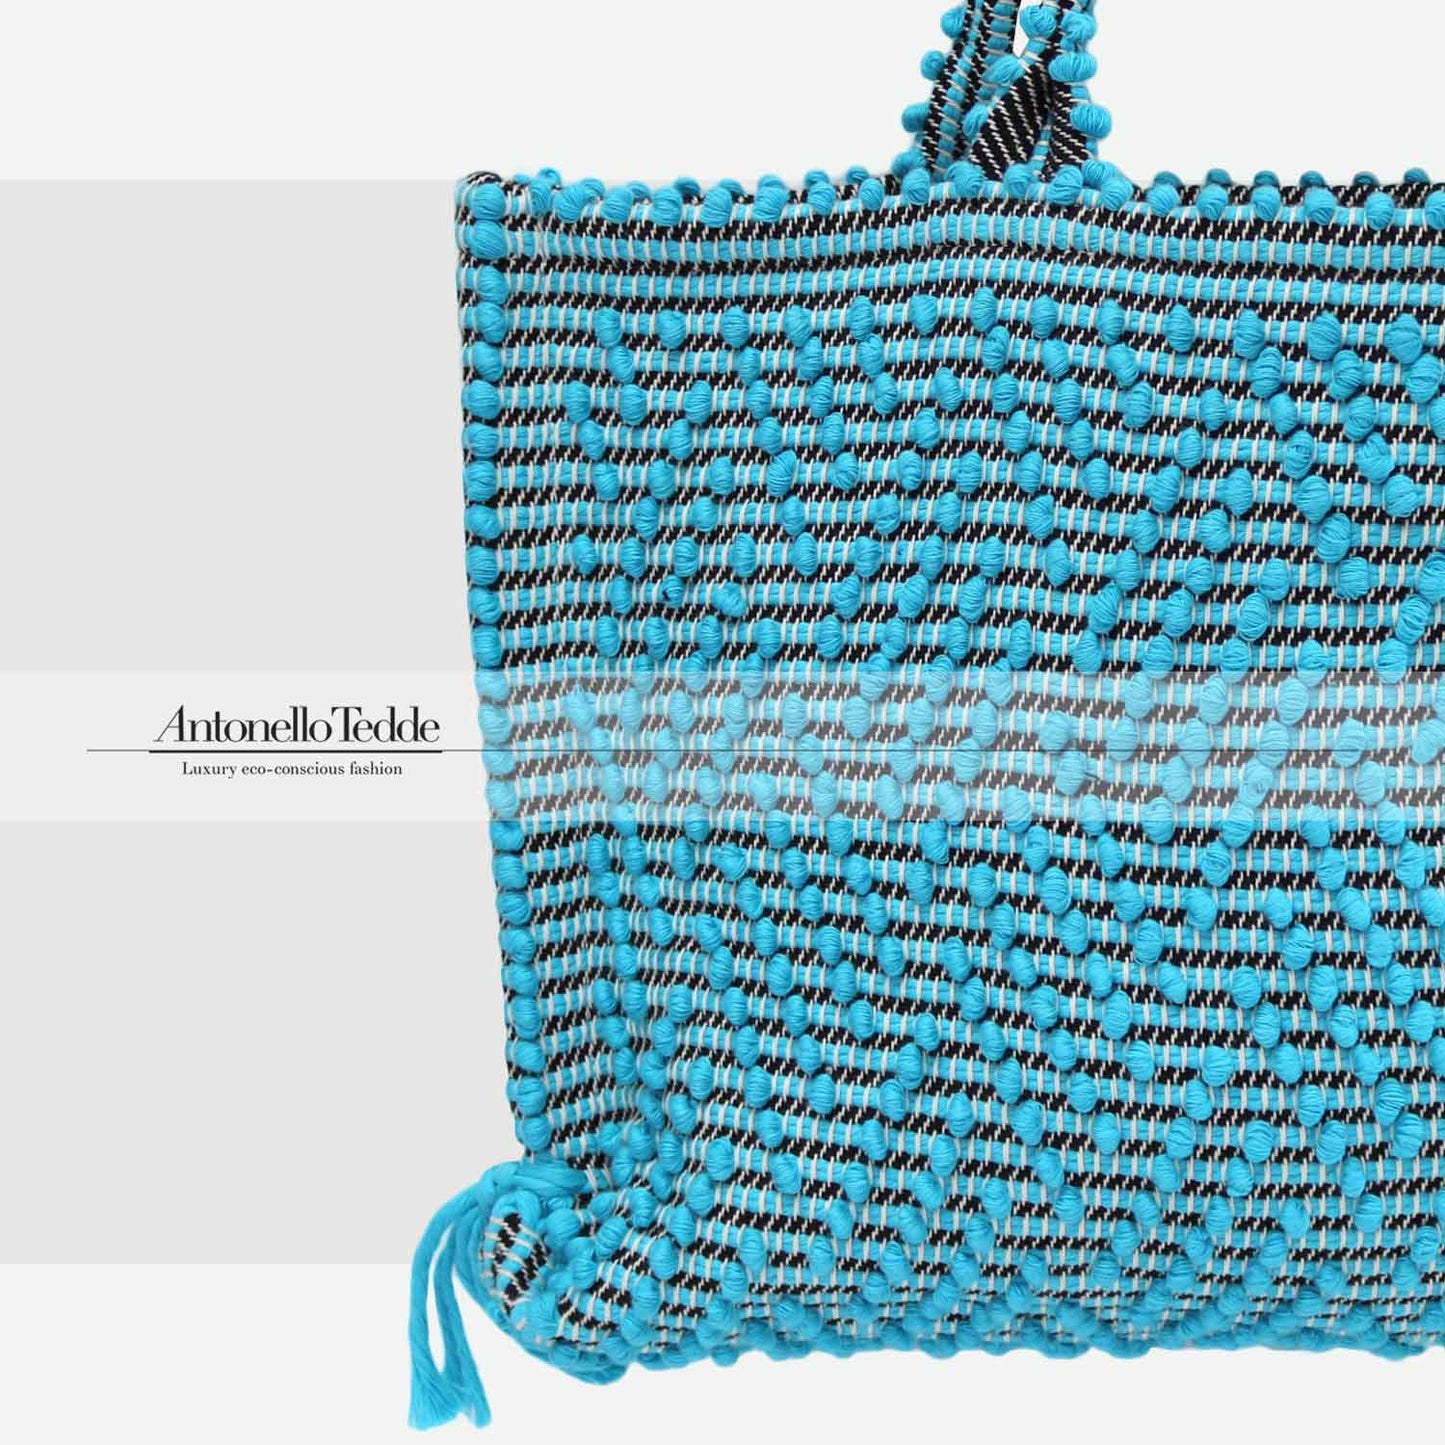 CAPRICCIOLI Medium ZigZag - Eco-conscious handwoven medium tote handbag - Turquoise